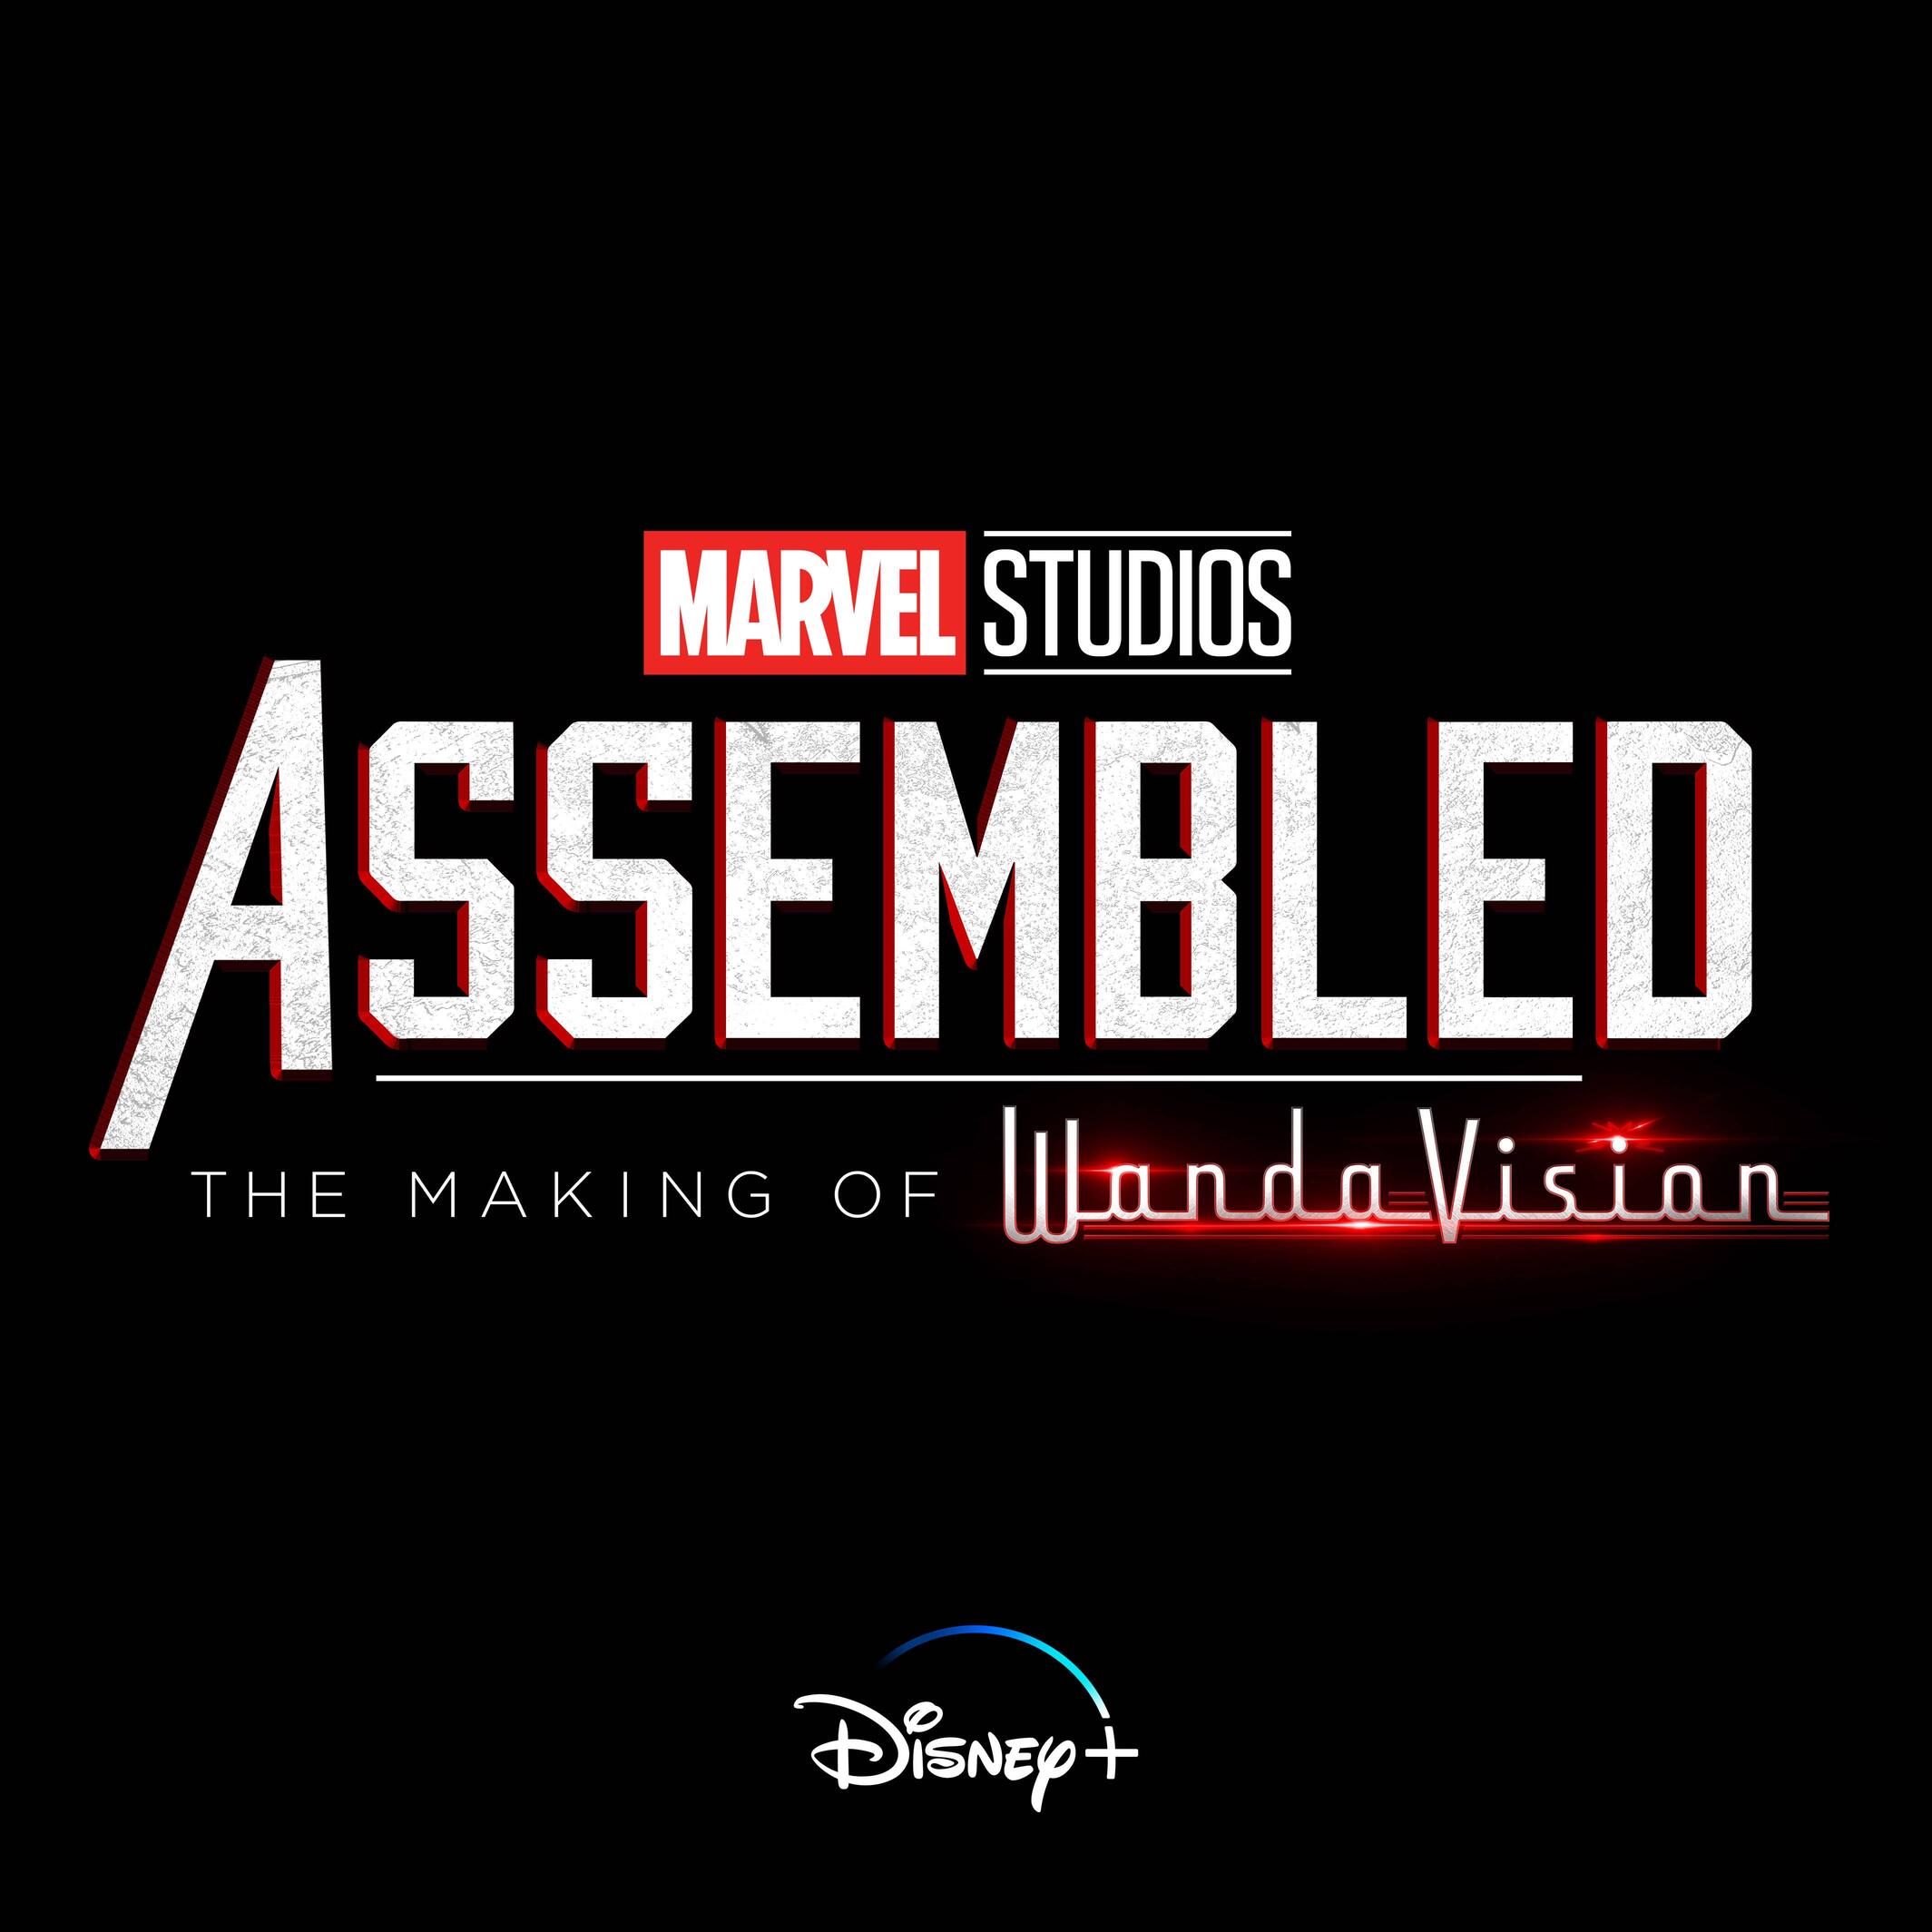 Assembled: saiba mais sobre a nova série documental da Marvel